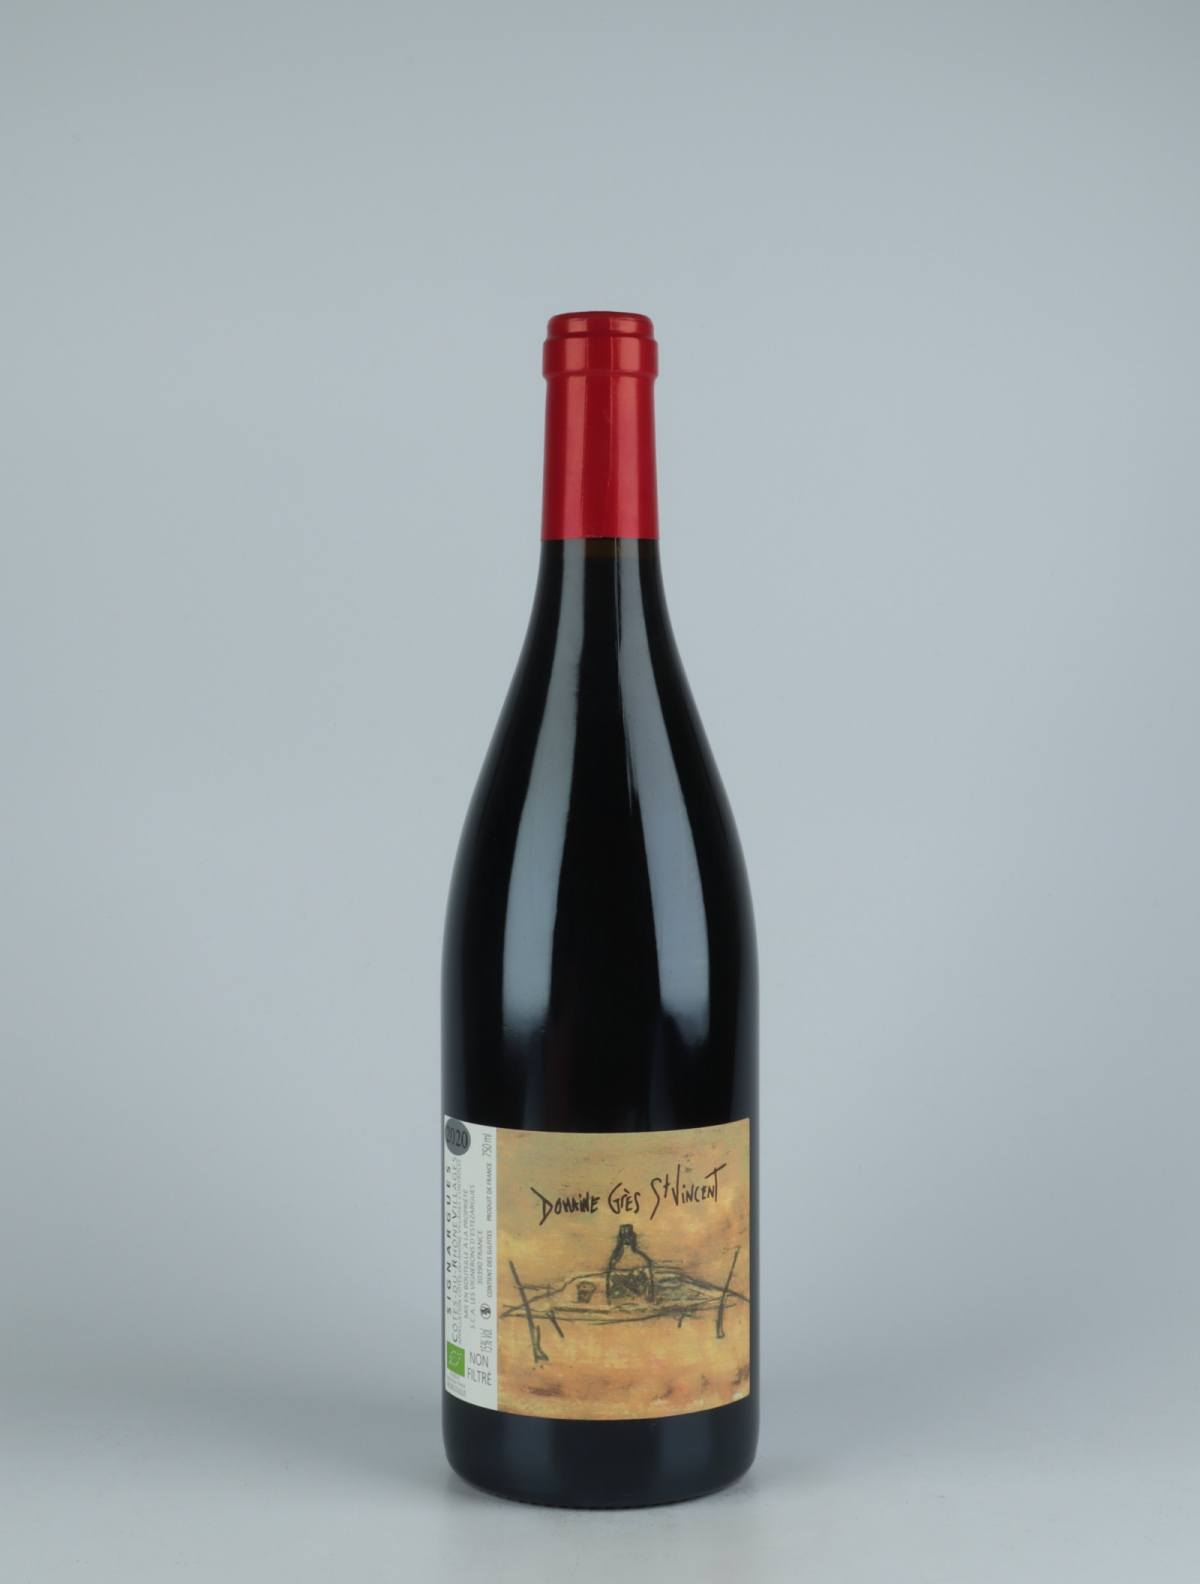 A bottle 2020 Côtes du Rhône - Grès St Vincent Red wine from Les Vignerons d’Estézargues, Rhône in France